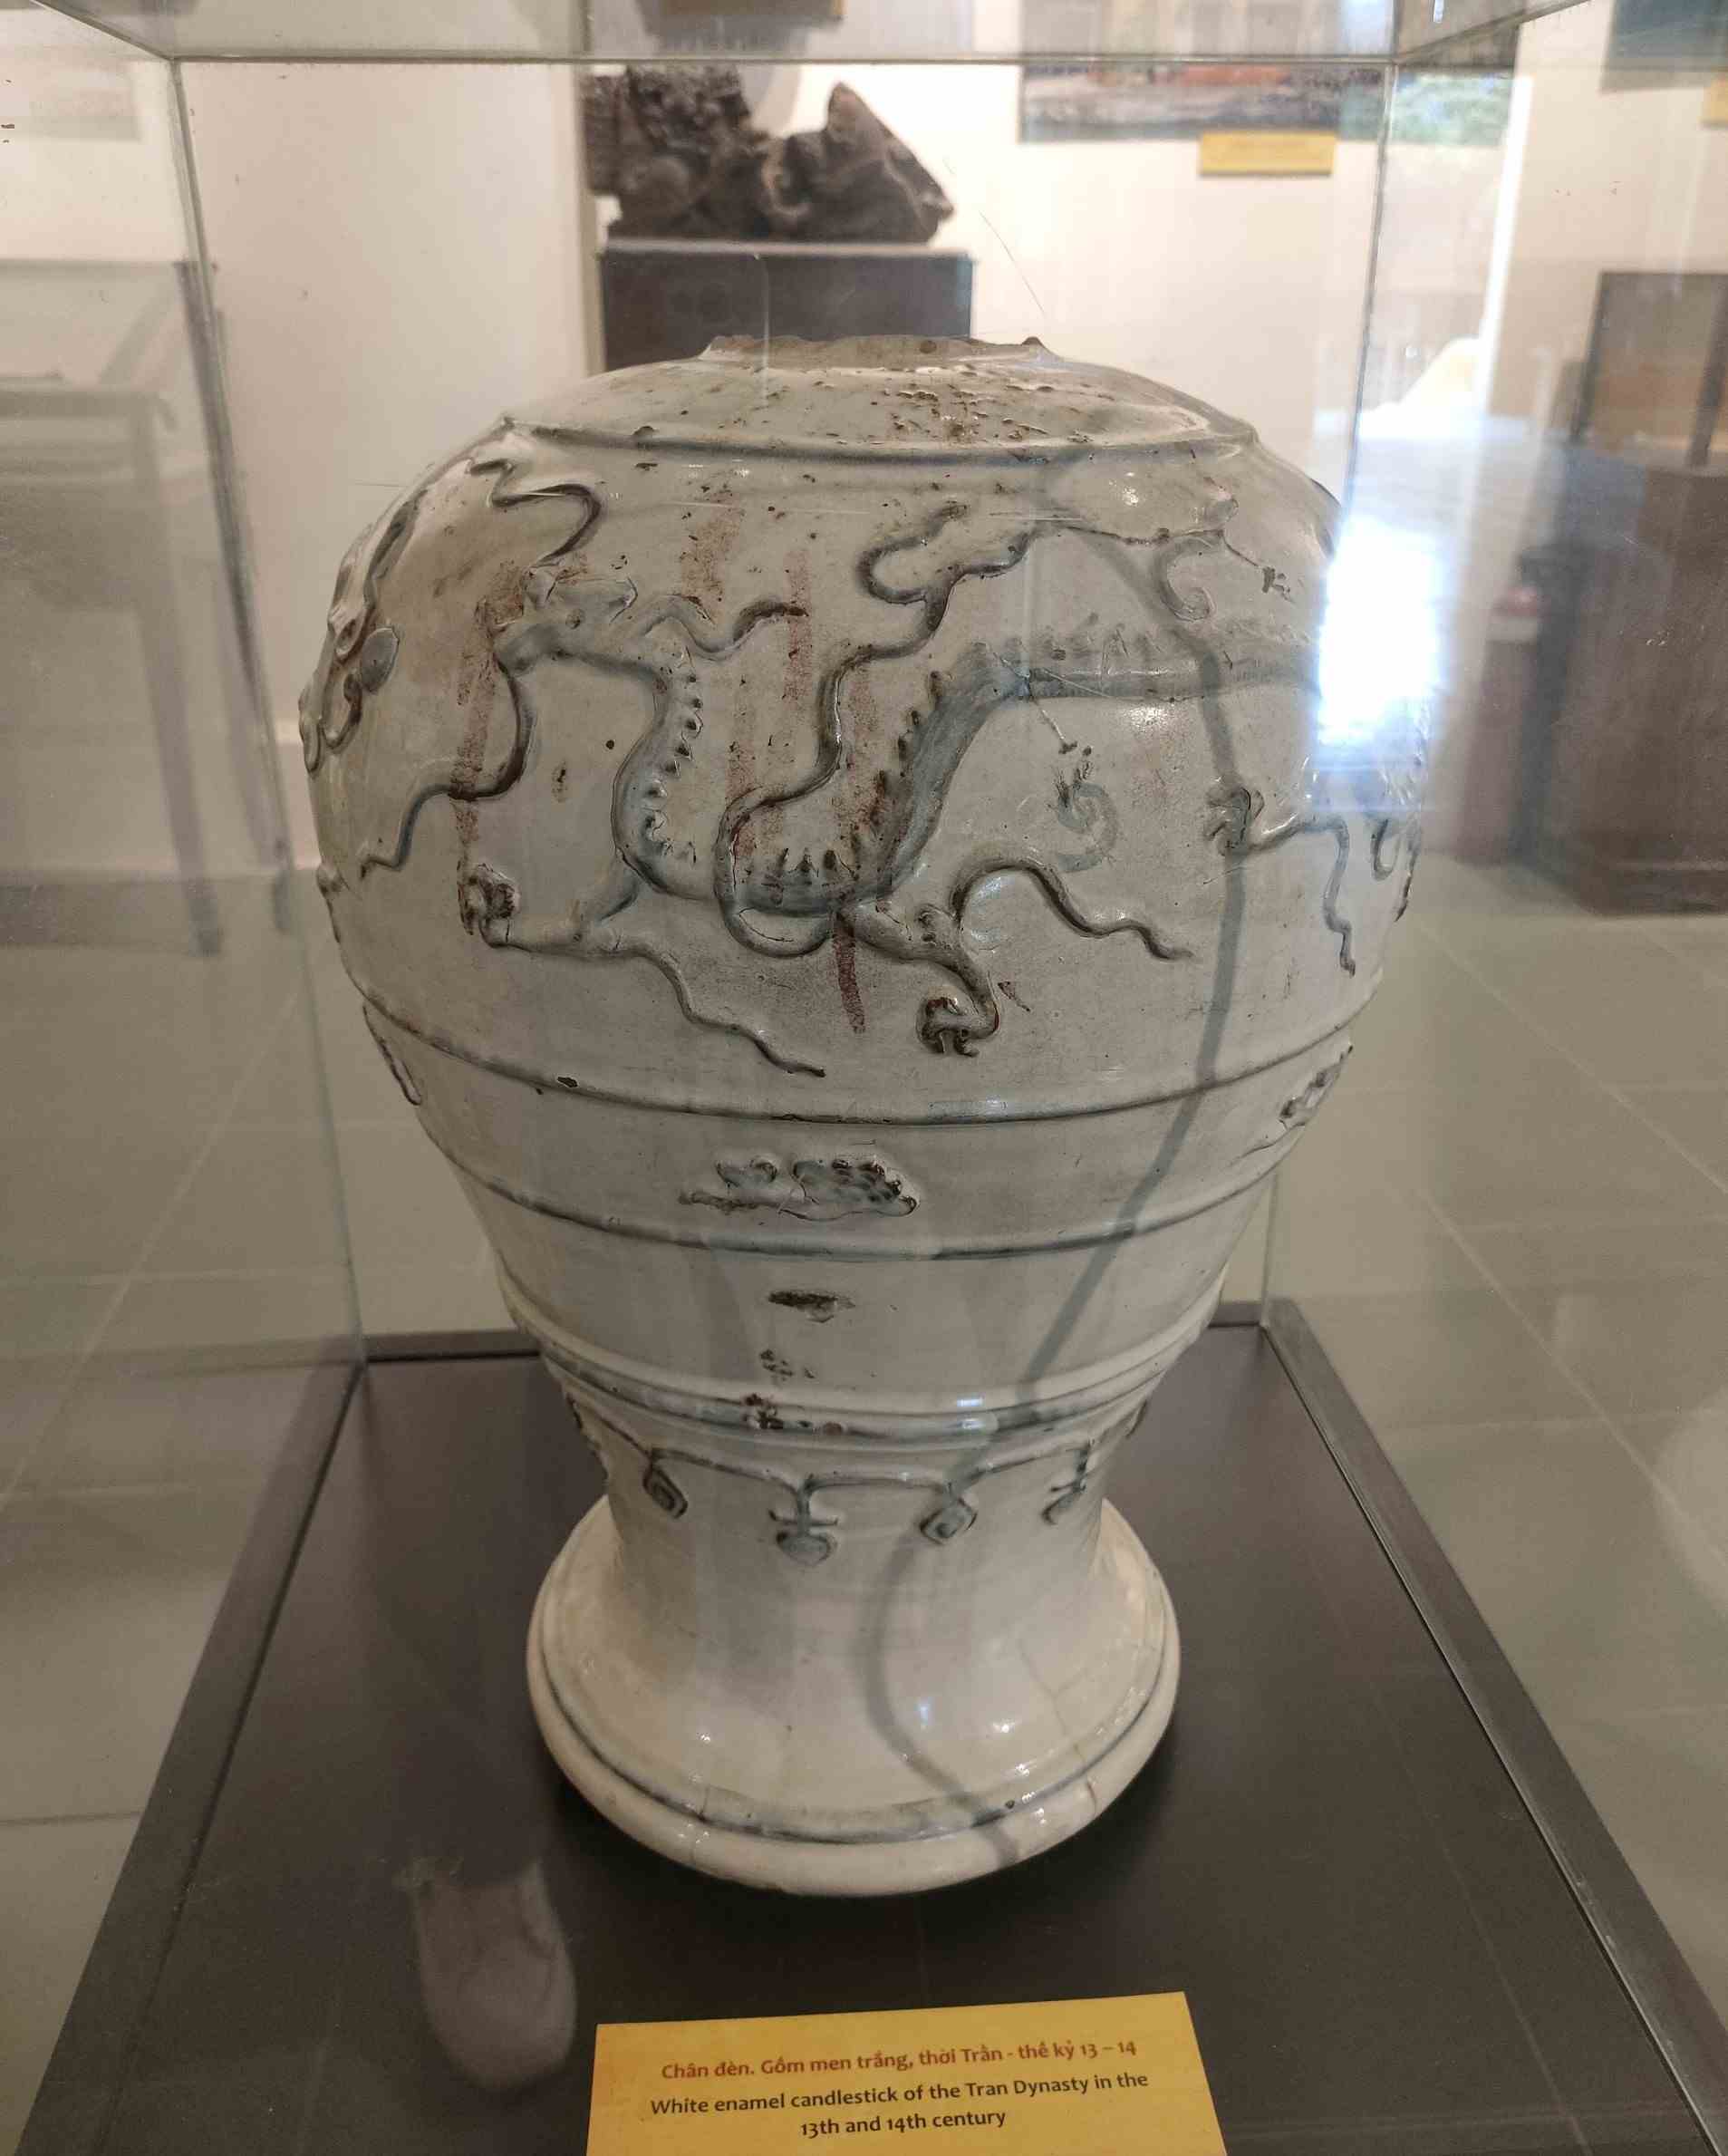 Chân đèn làm từ gốm men trắng là hiện vật thời Trần - thế kỷ 13-14. Chân đèn được trang trí hình rồng cưỡi mây uốn lượn.